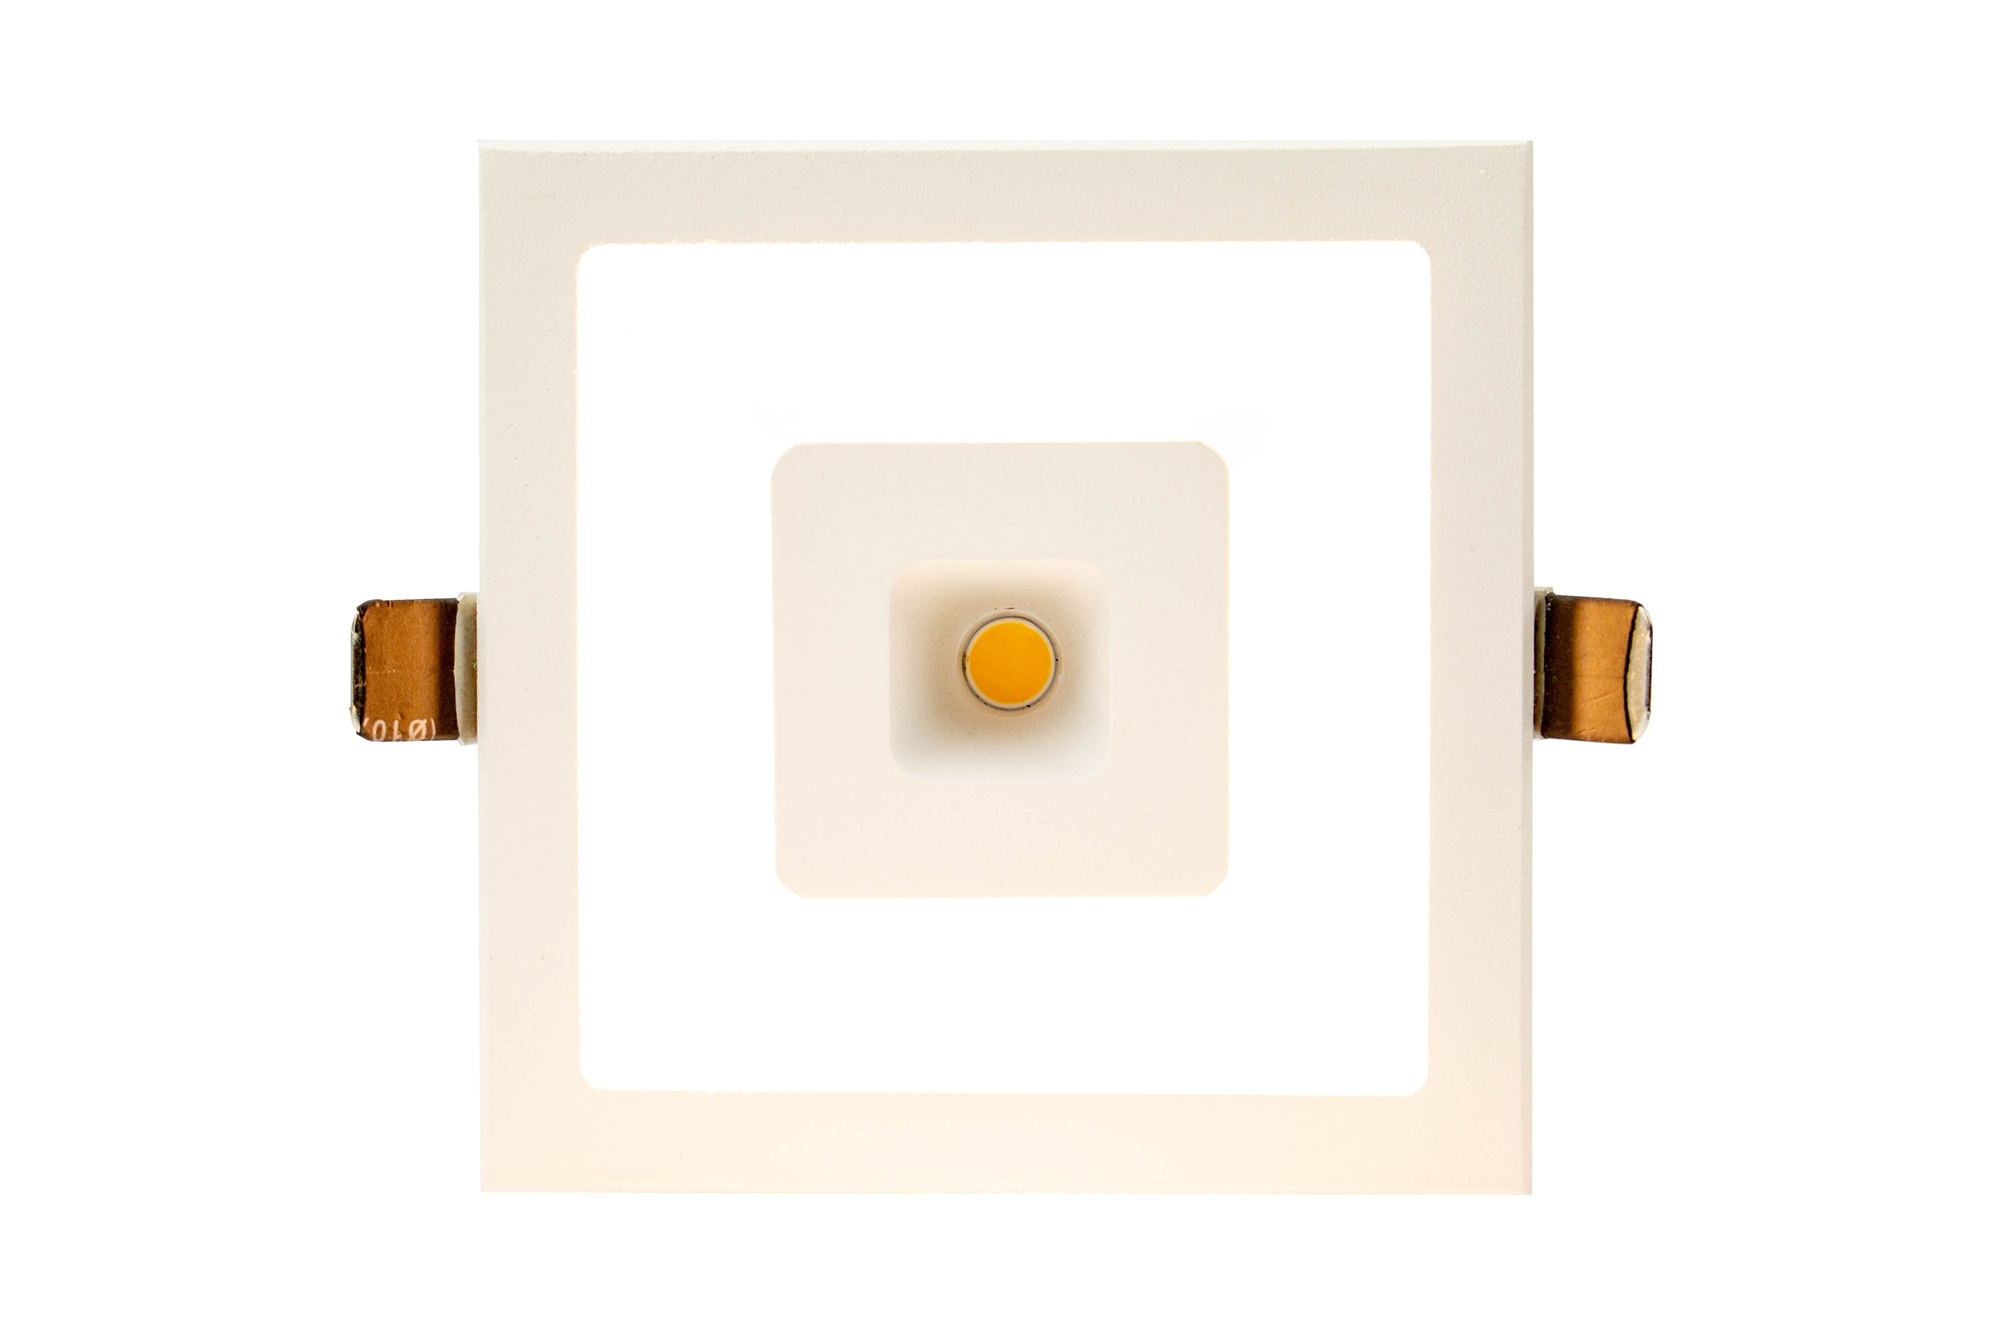 Lampenlux LED Einbaustrahler Sondor Spot eckig weiß inkl Trafo direkte und indirekte Beleuchtung Aluminium 15.5x15.5cm